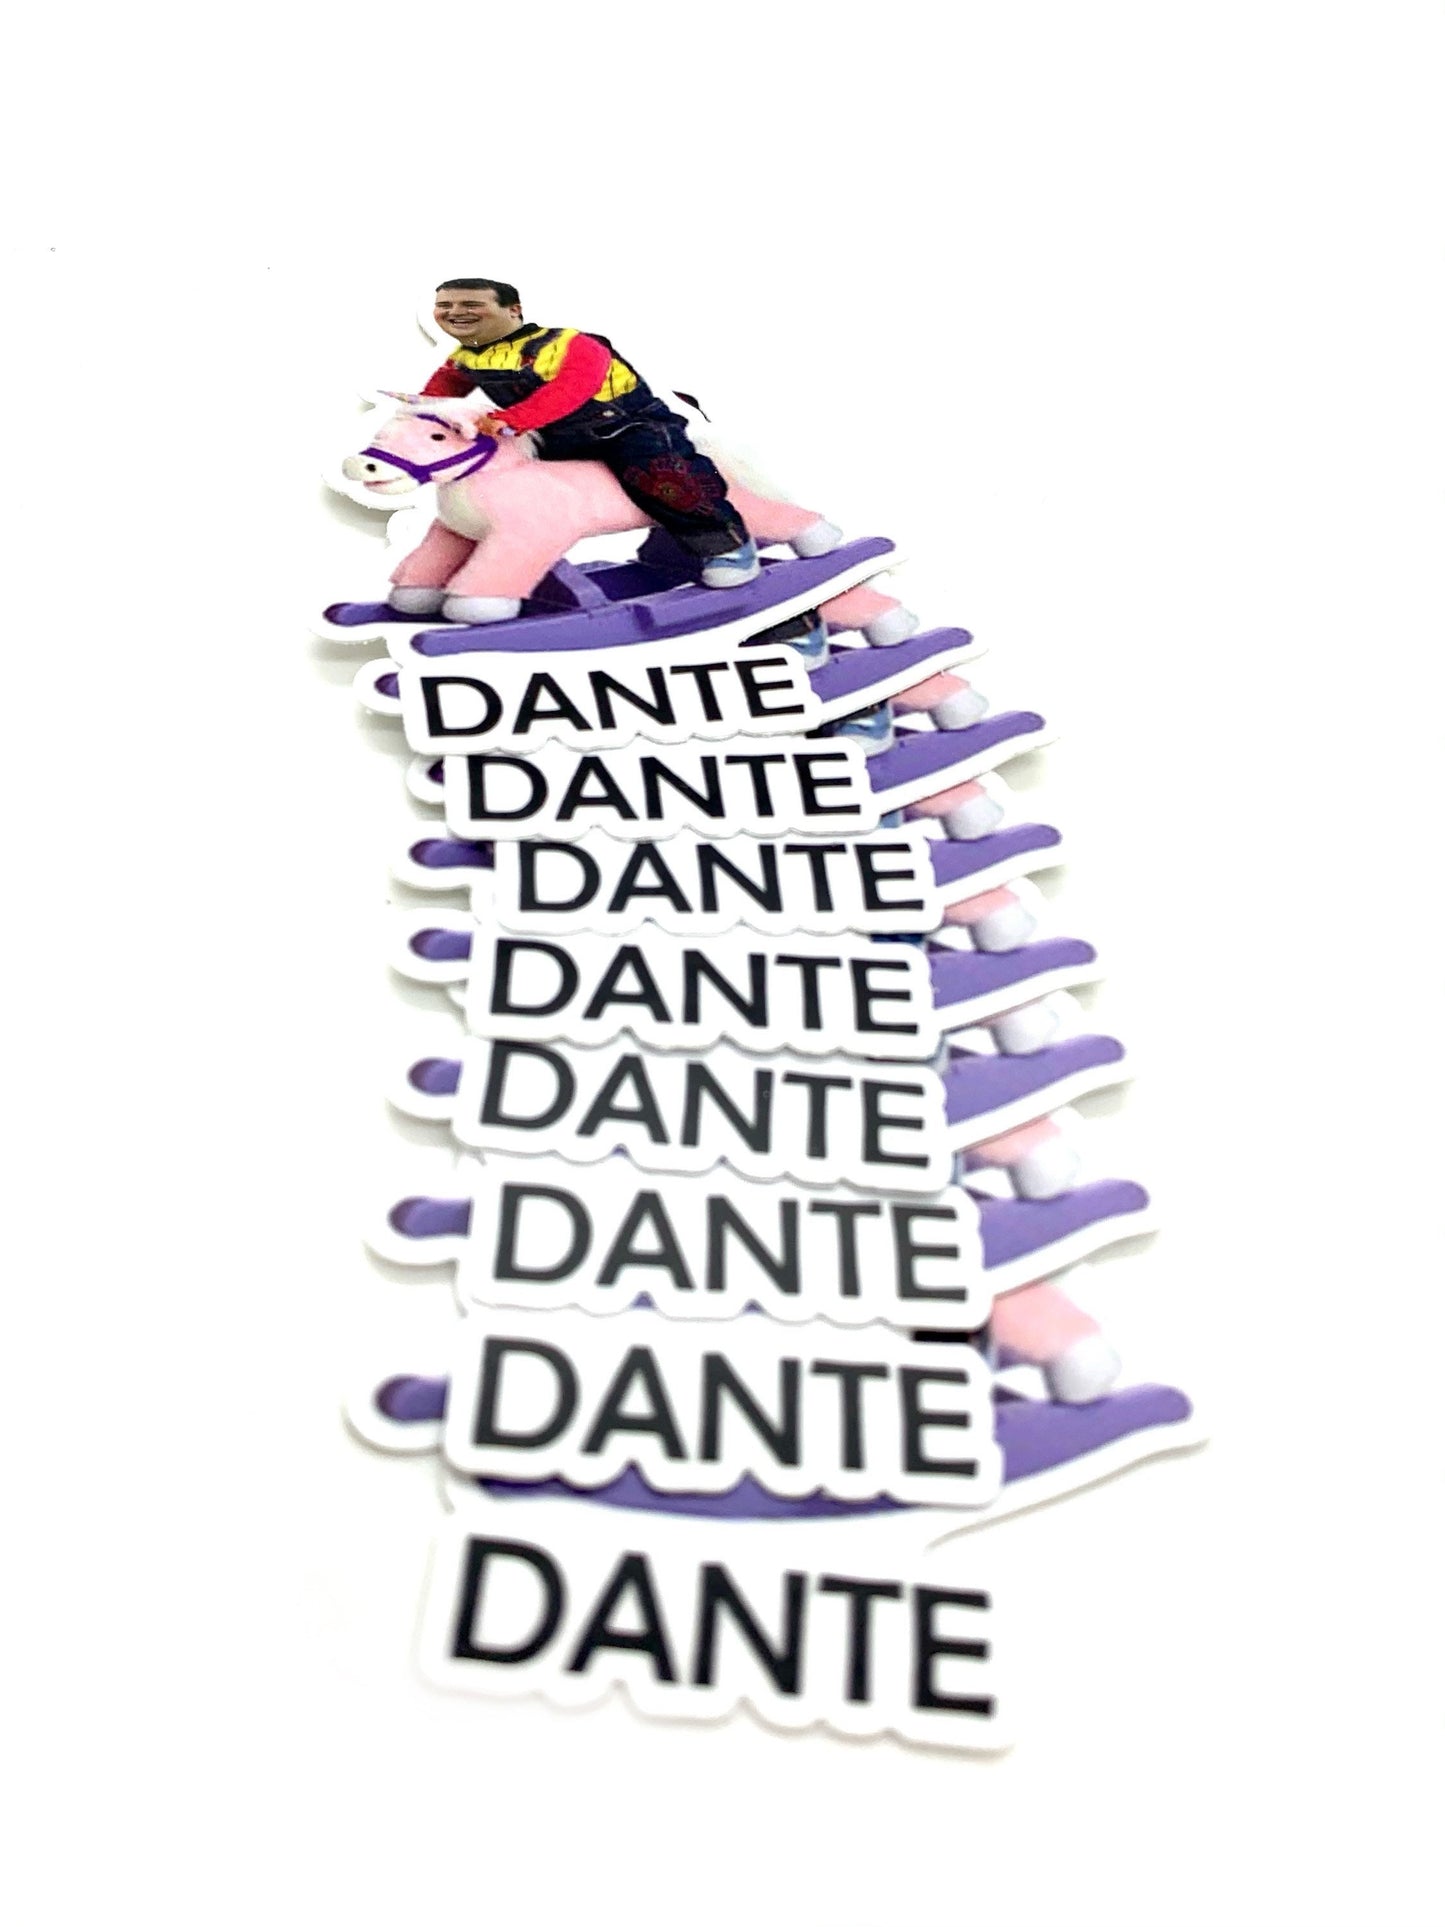 Dante Waterproof Sticker Decal